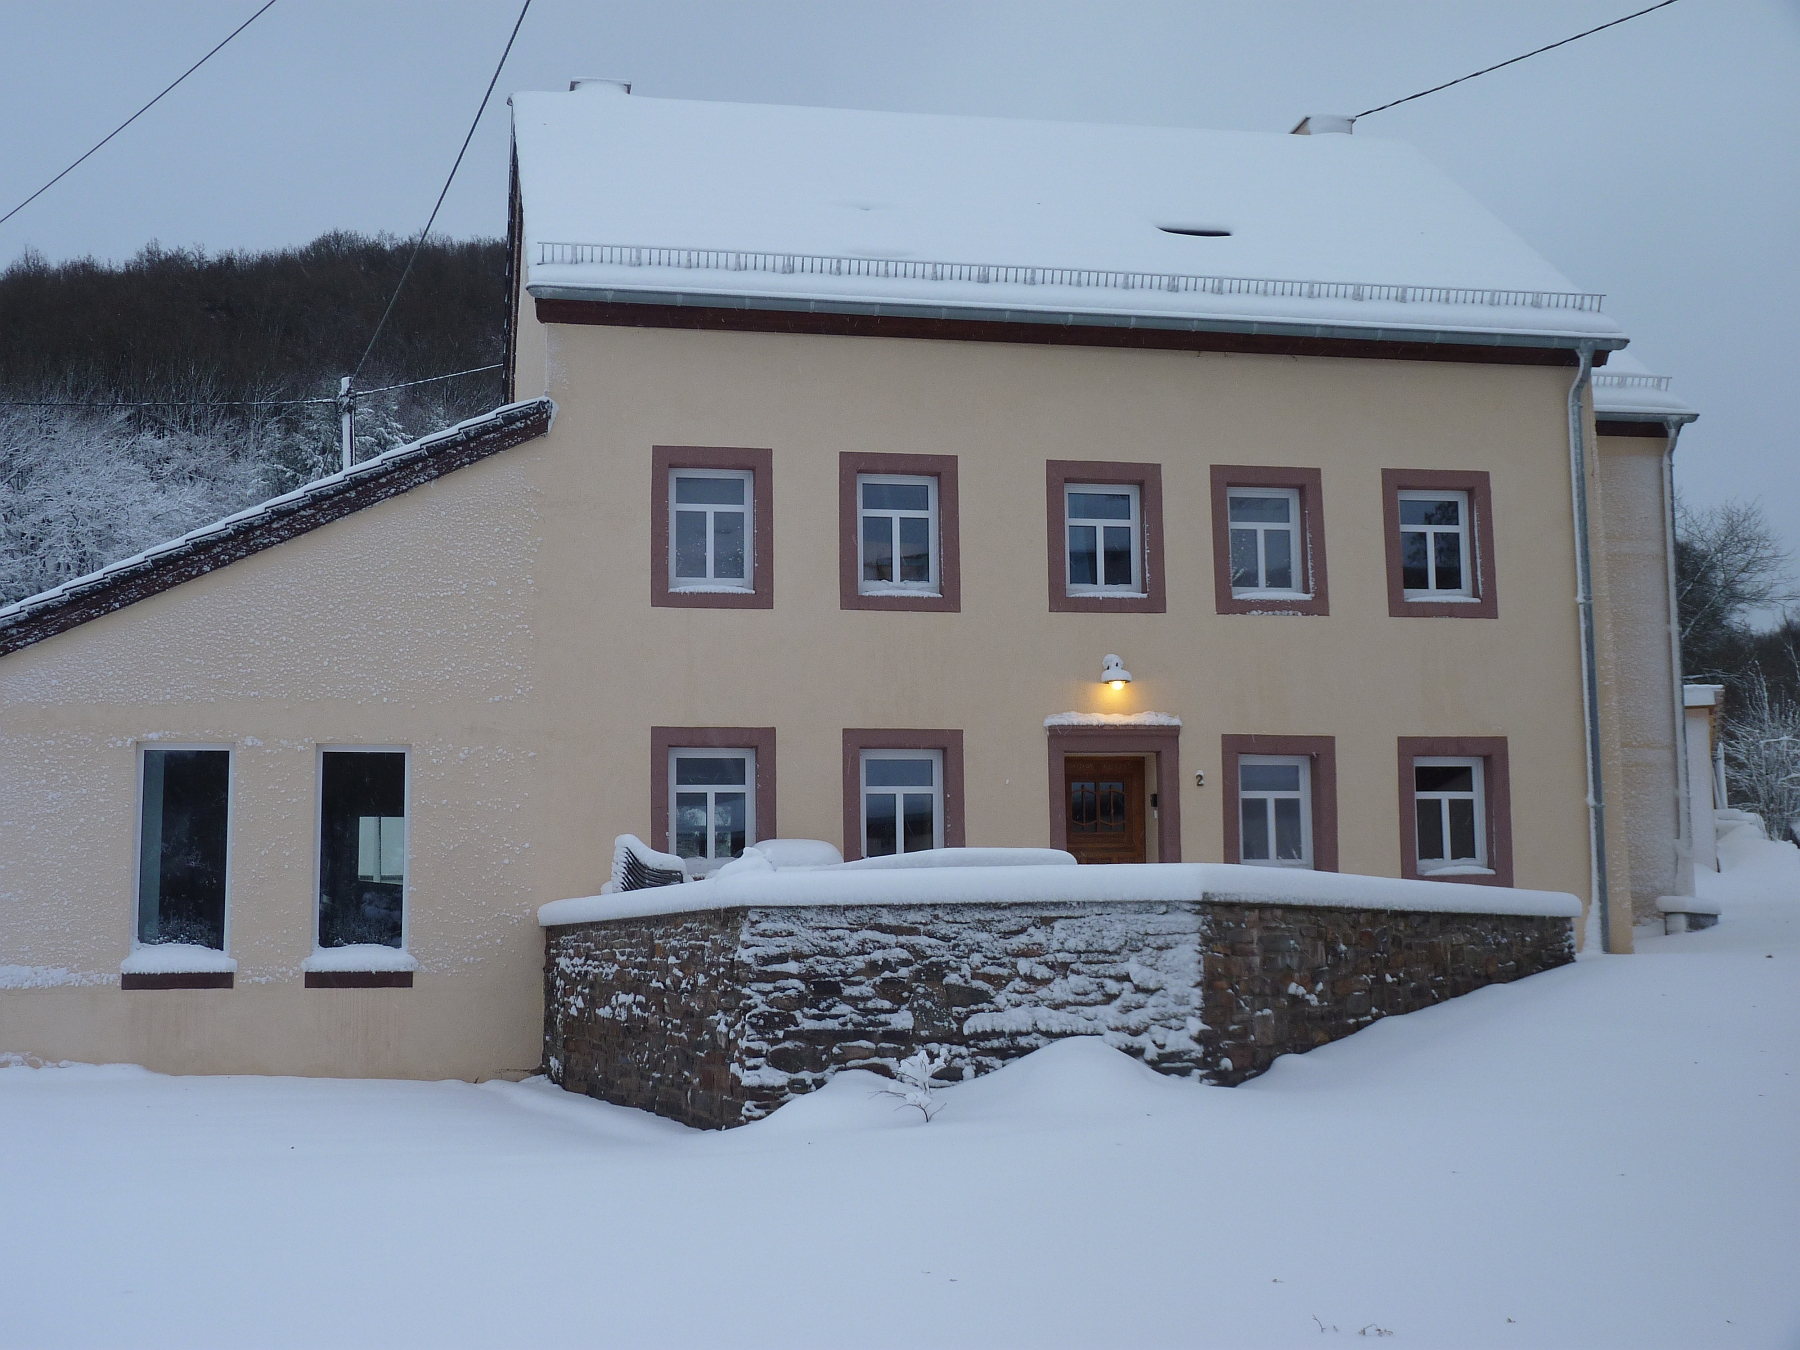 Eifellandhaus im Schnee